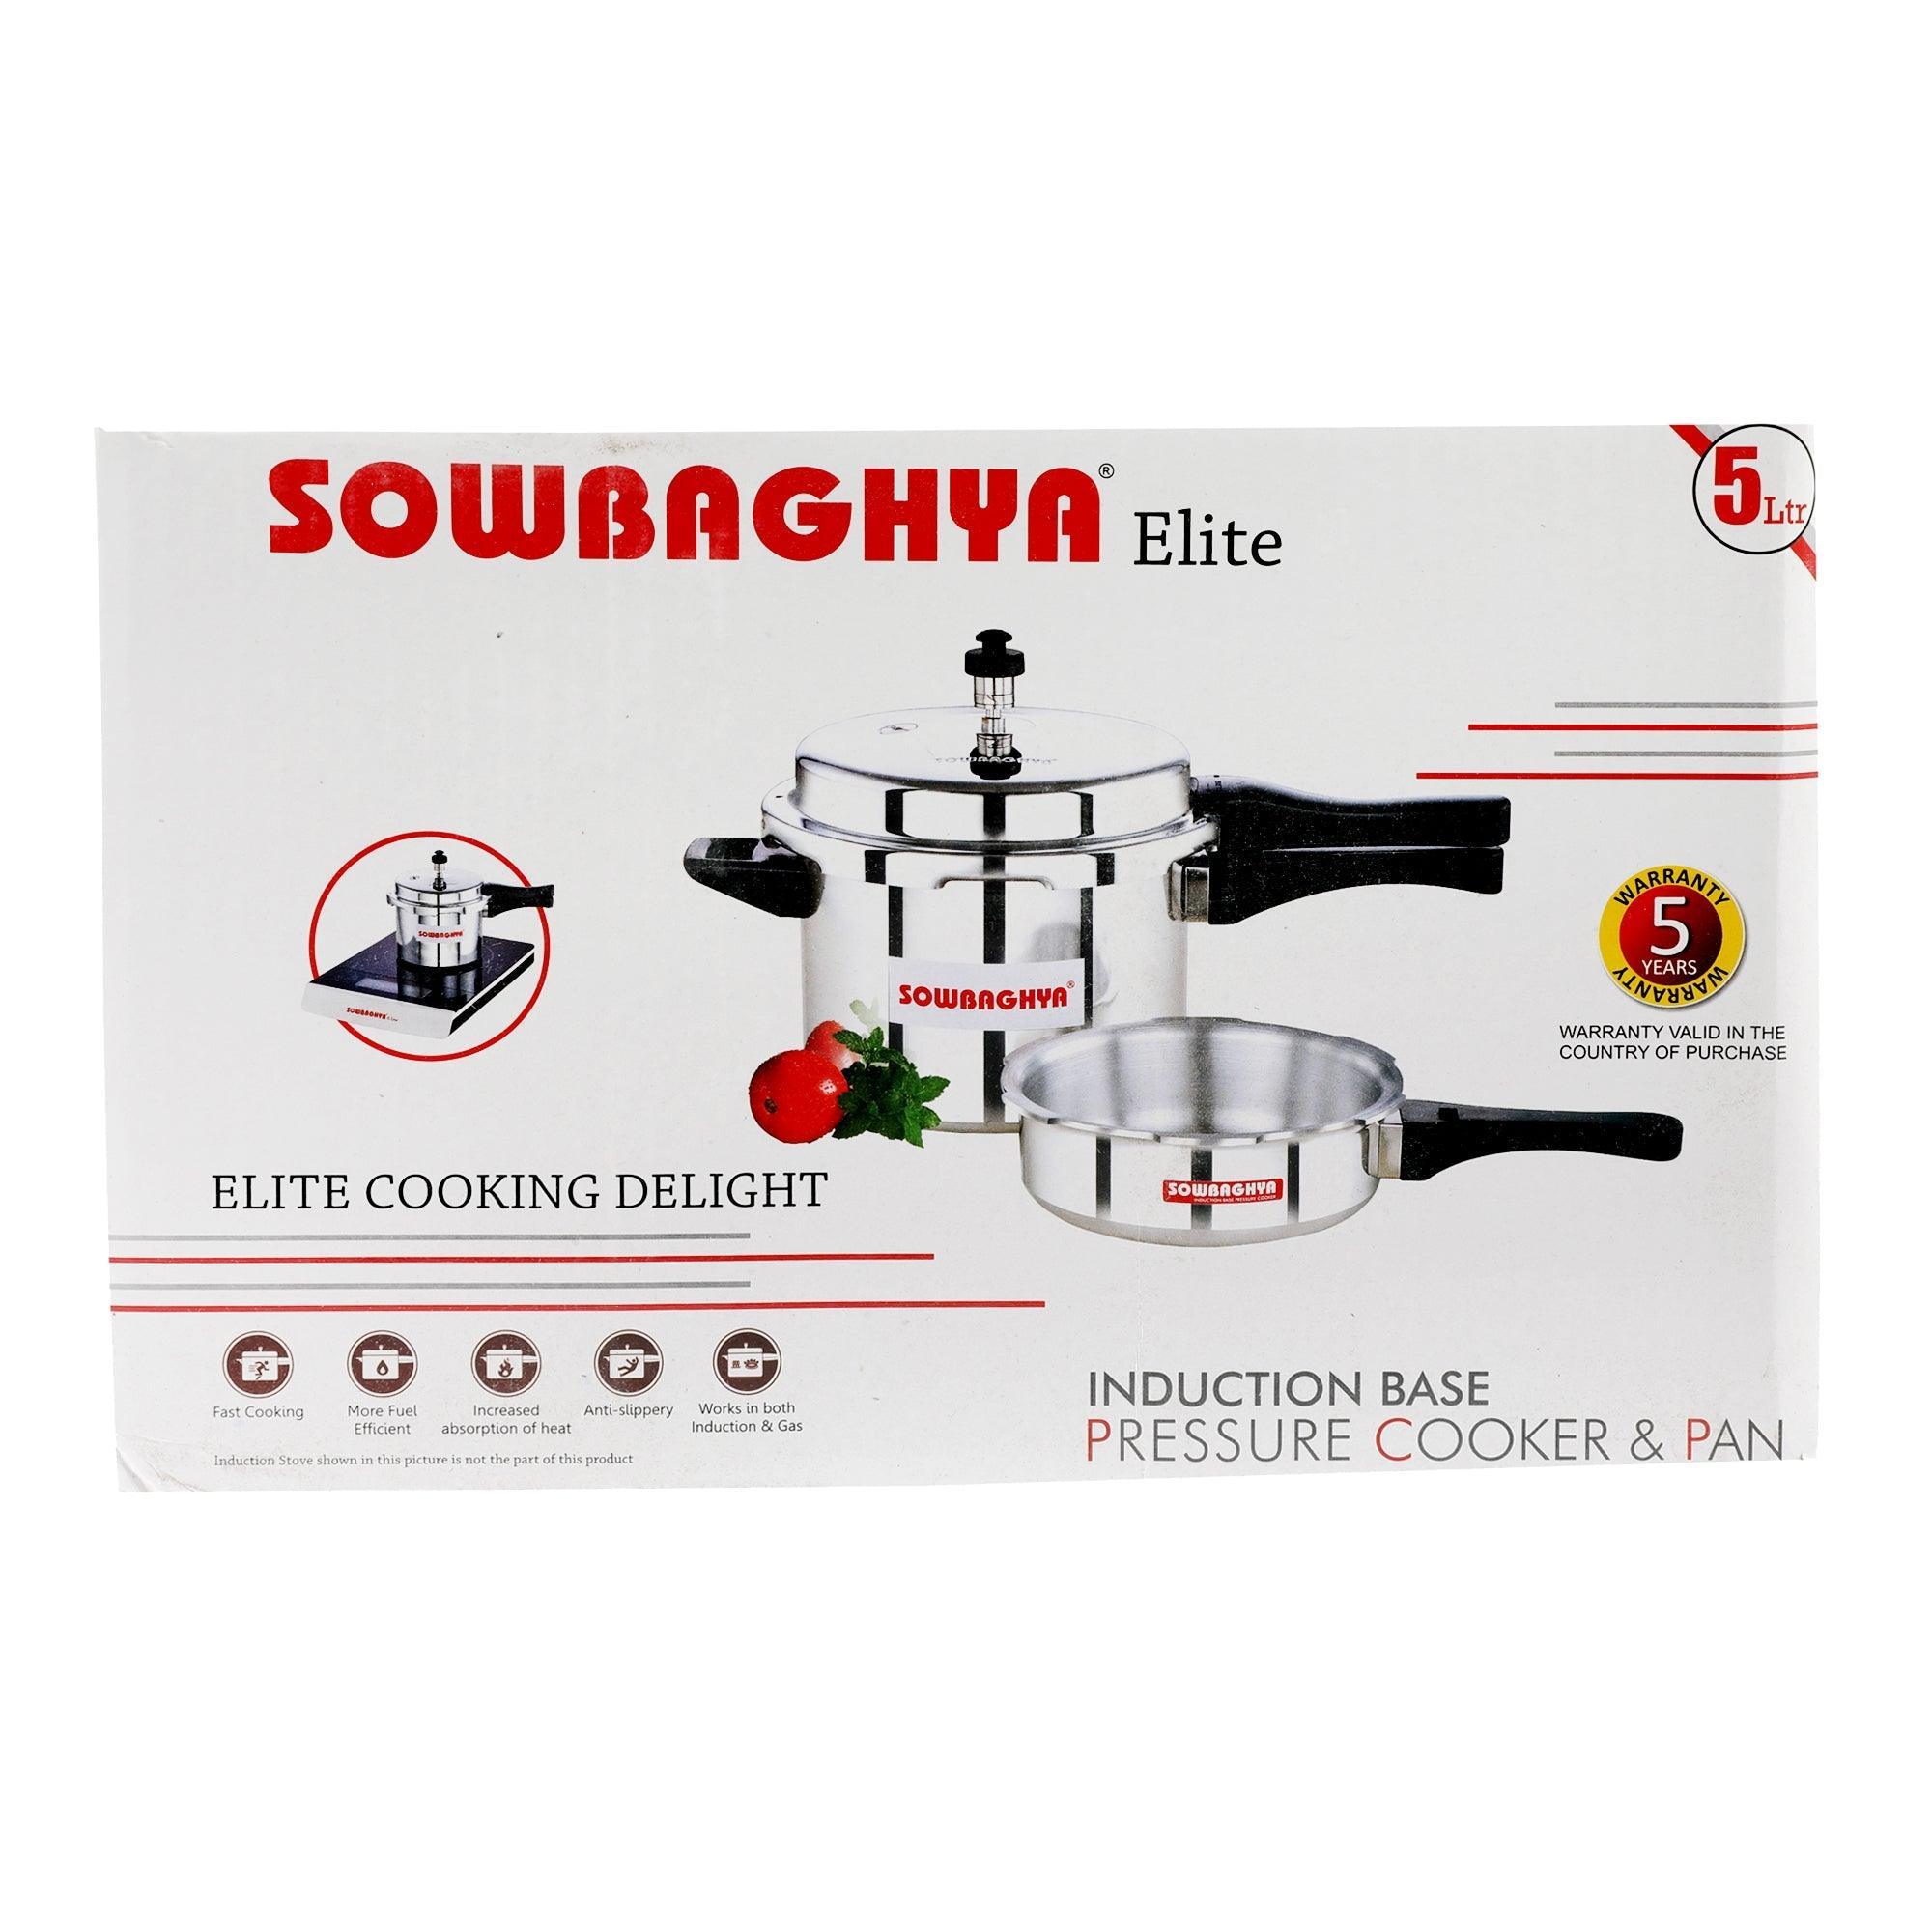 5 Lit Elite Induction Base ALU Pressure Cooker & Pan - SOWBAGHYA